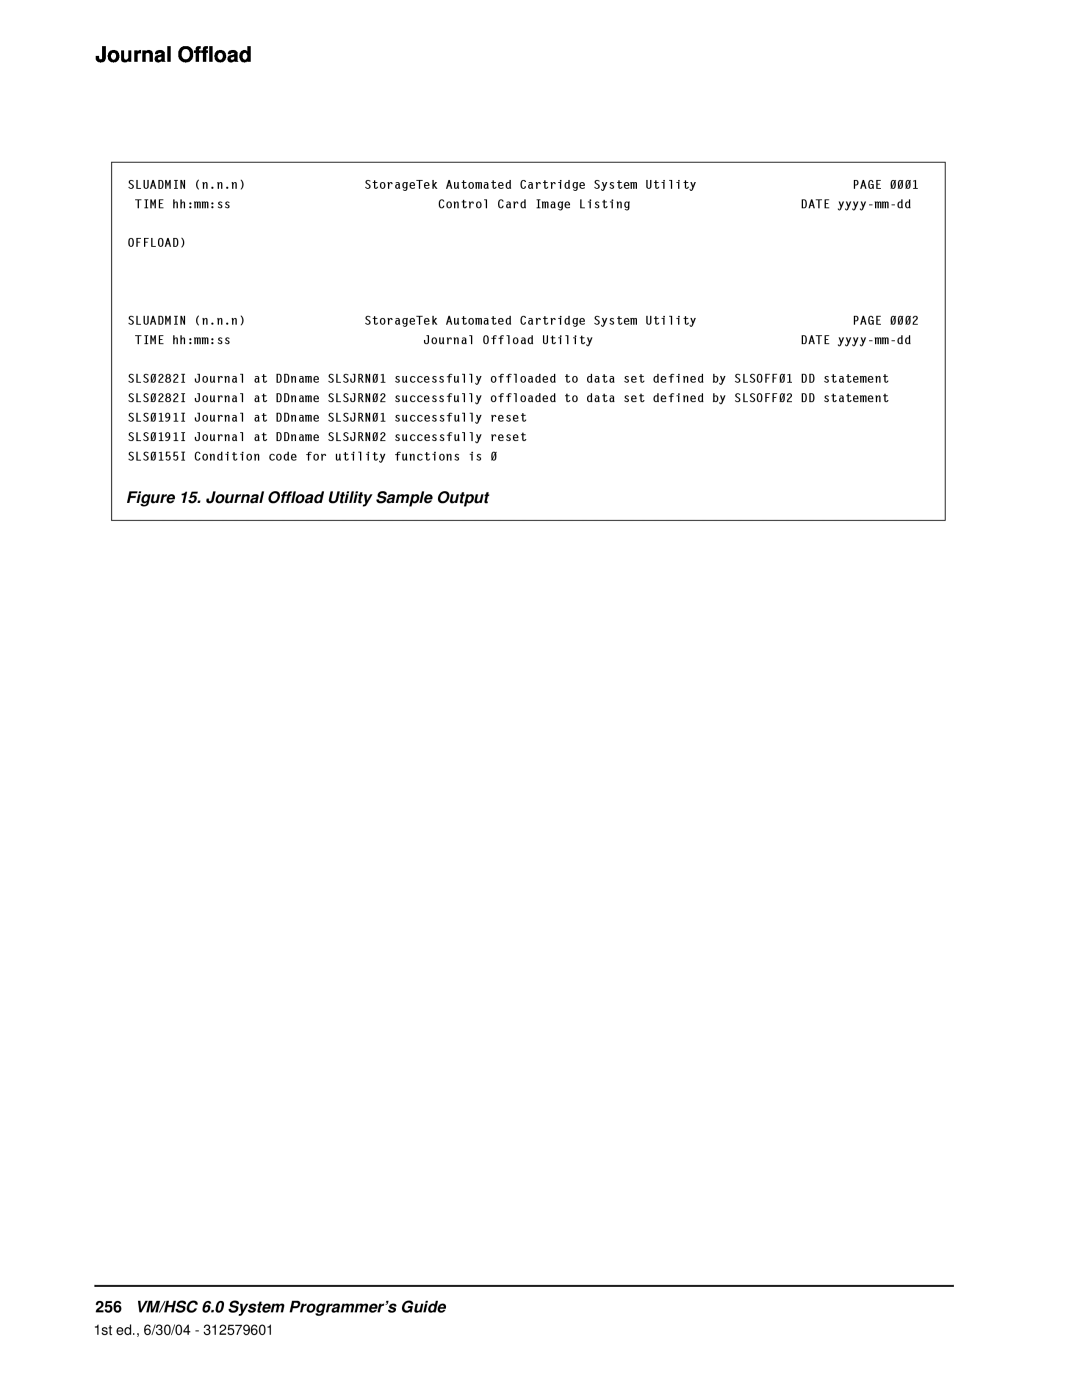 StorageTek manual Journal Offload Utility Sample Output, 256VM/HSC 6.0 System Programmer’s Guide, 1st ed., 6/30/04 